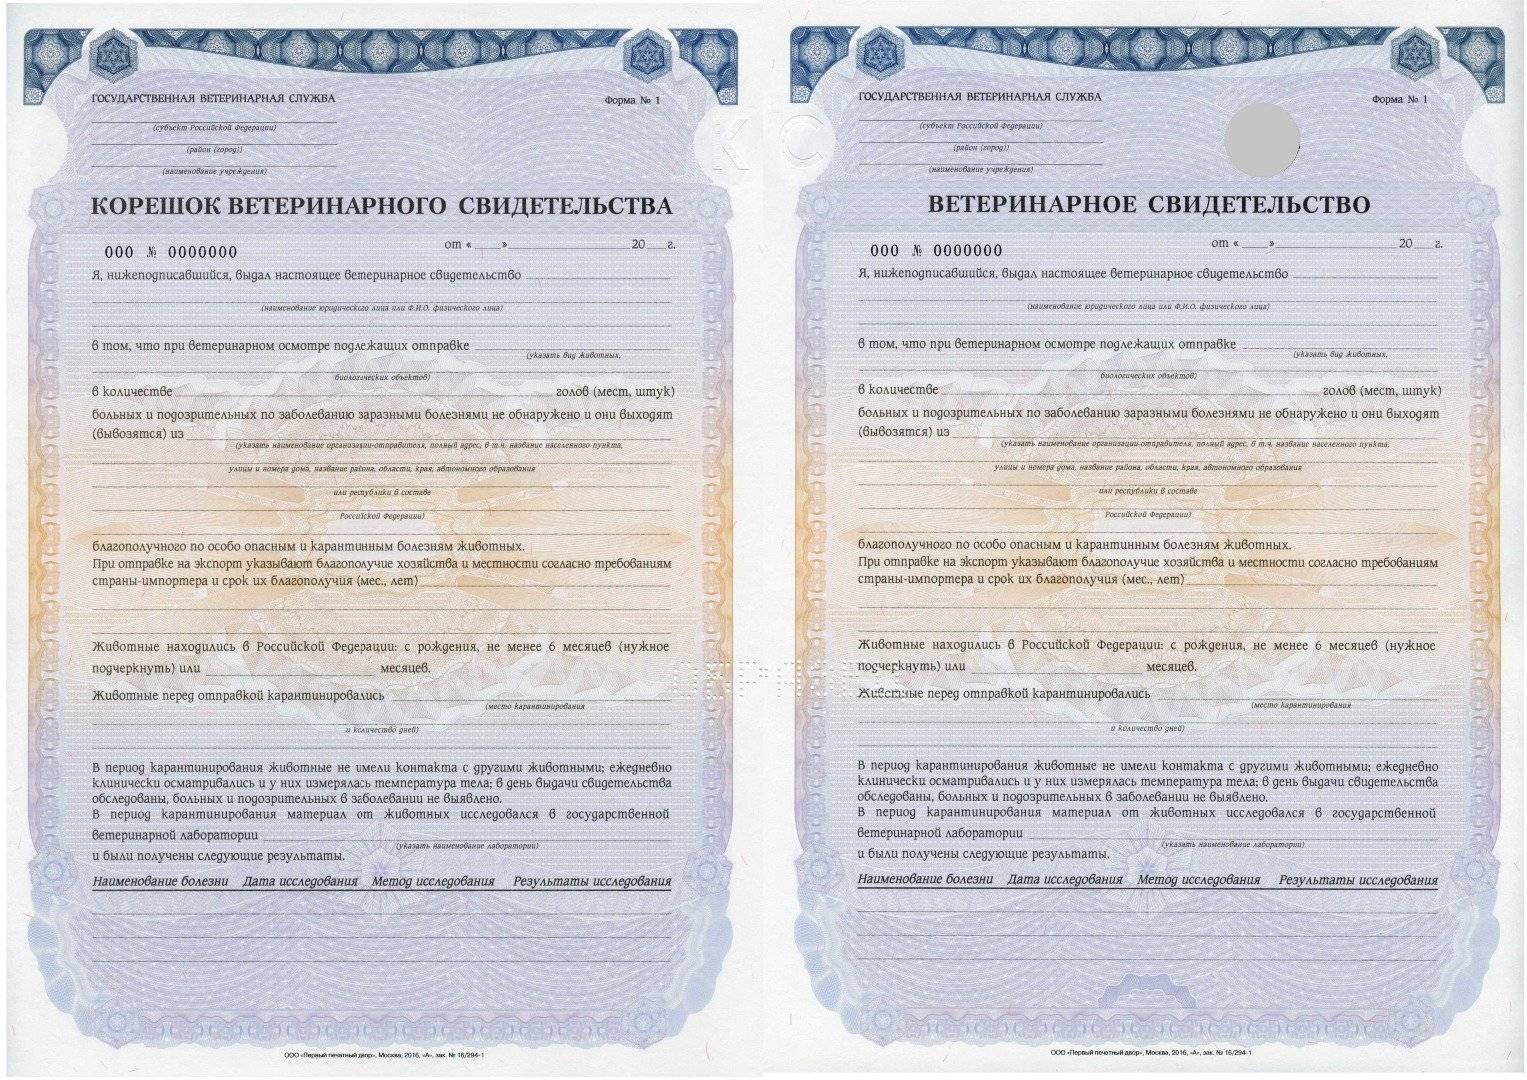 Ветеринарный сертификат: описание документа и правила его получения